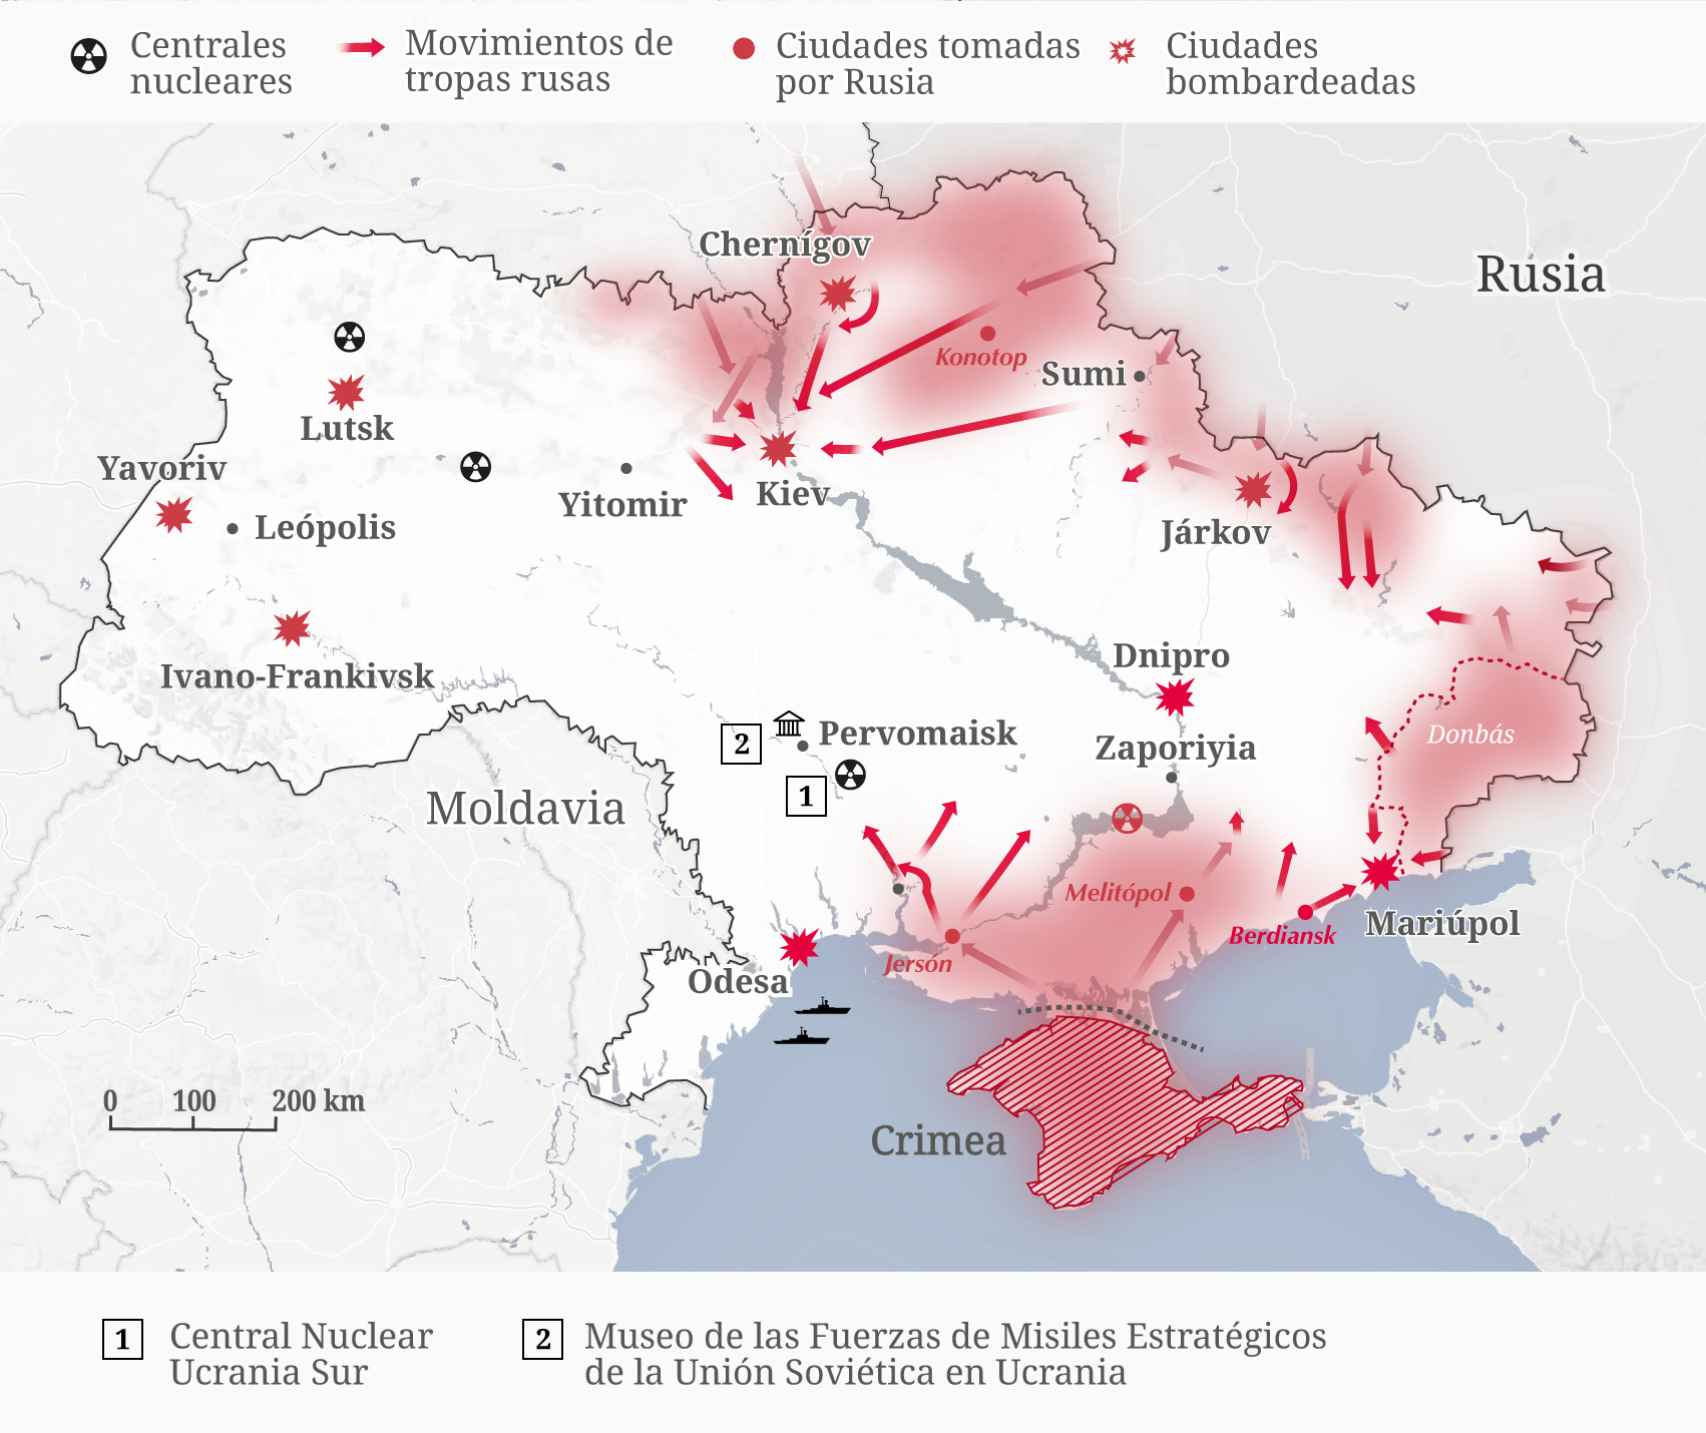 Mapa del avance militar ruso y el territorio ocupado en Ucrania. La ciudad de Pervomaisk y la antigua base de misiles atómicos está a 80 kilómetros al norte de la central de energía nuclear Ucrania Sur.